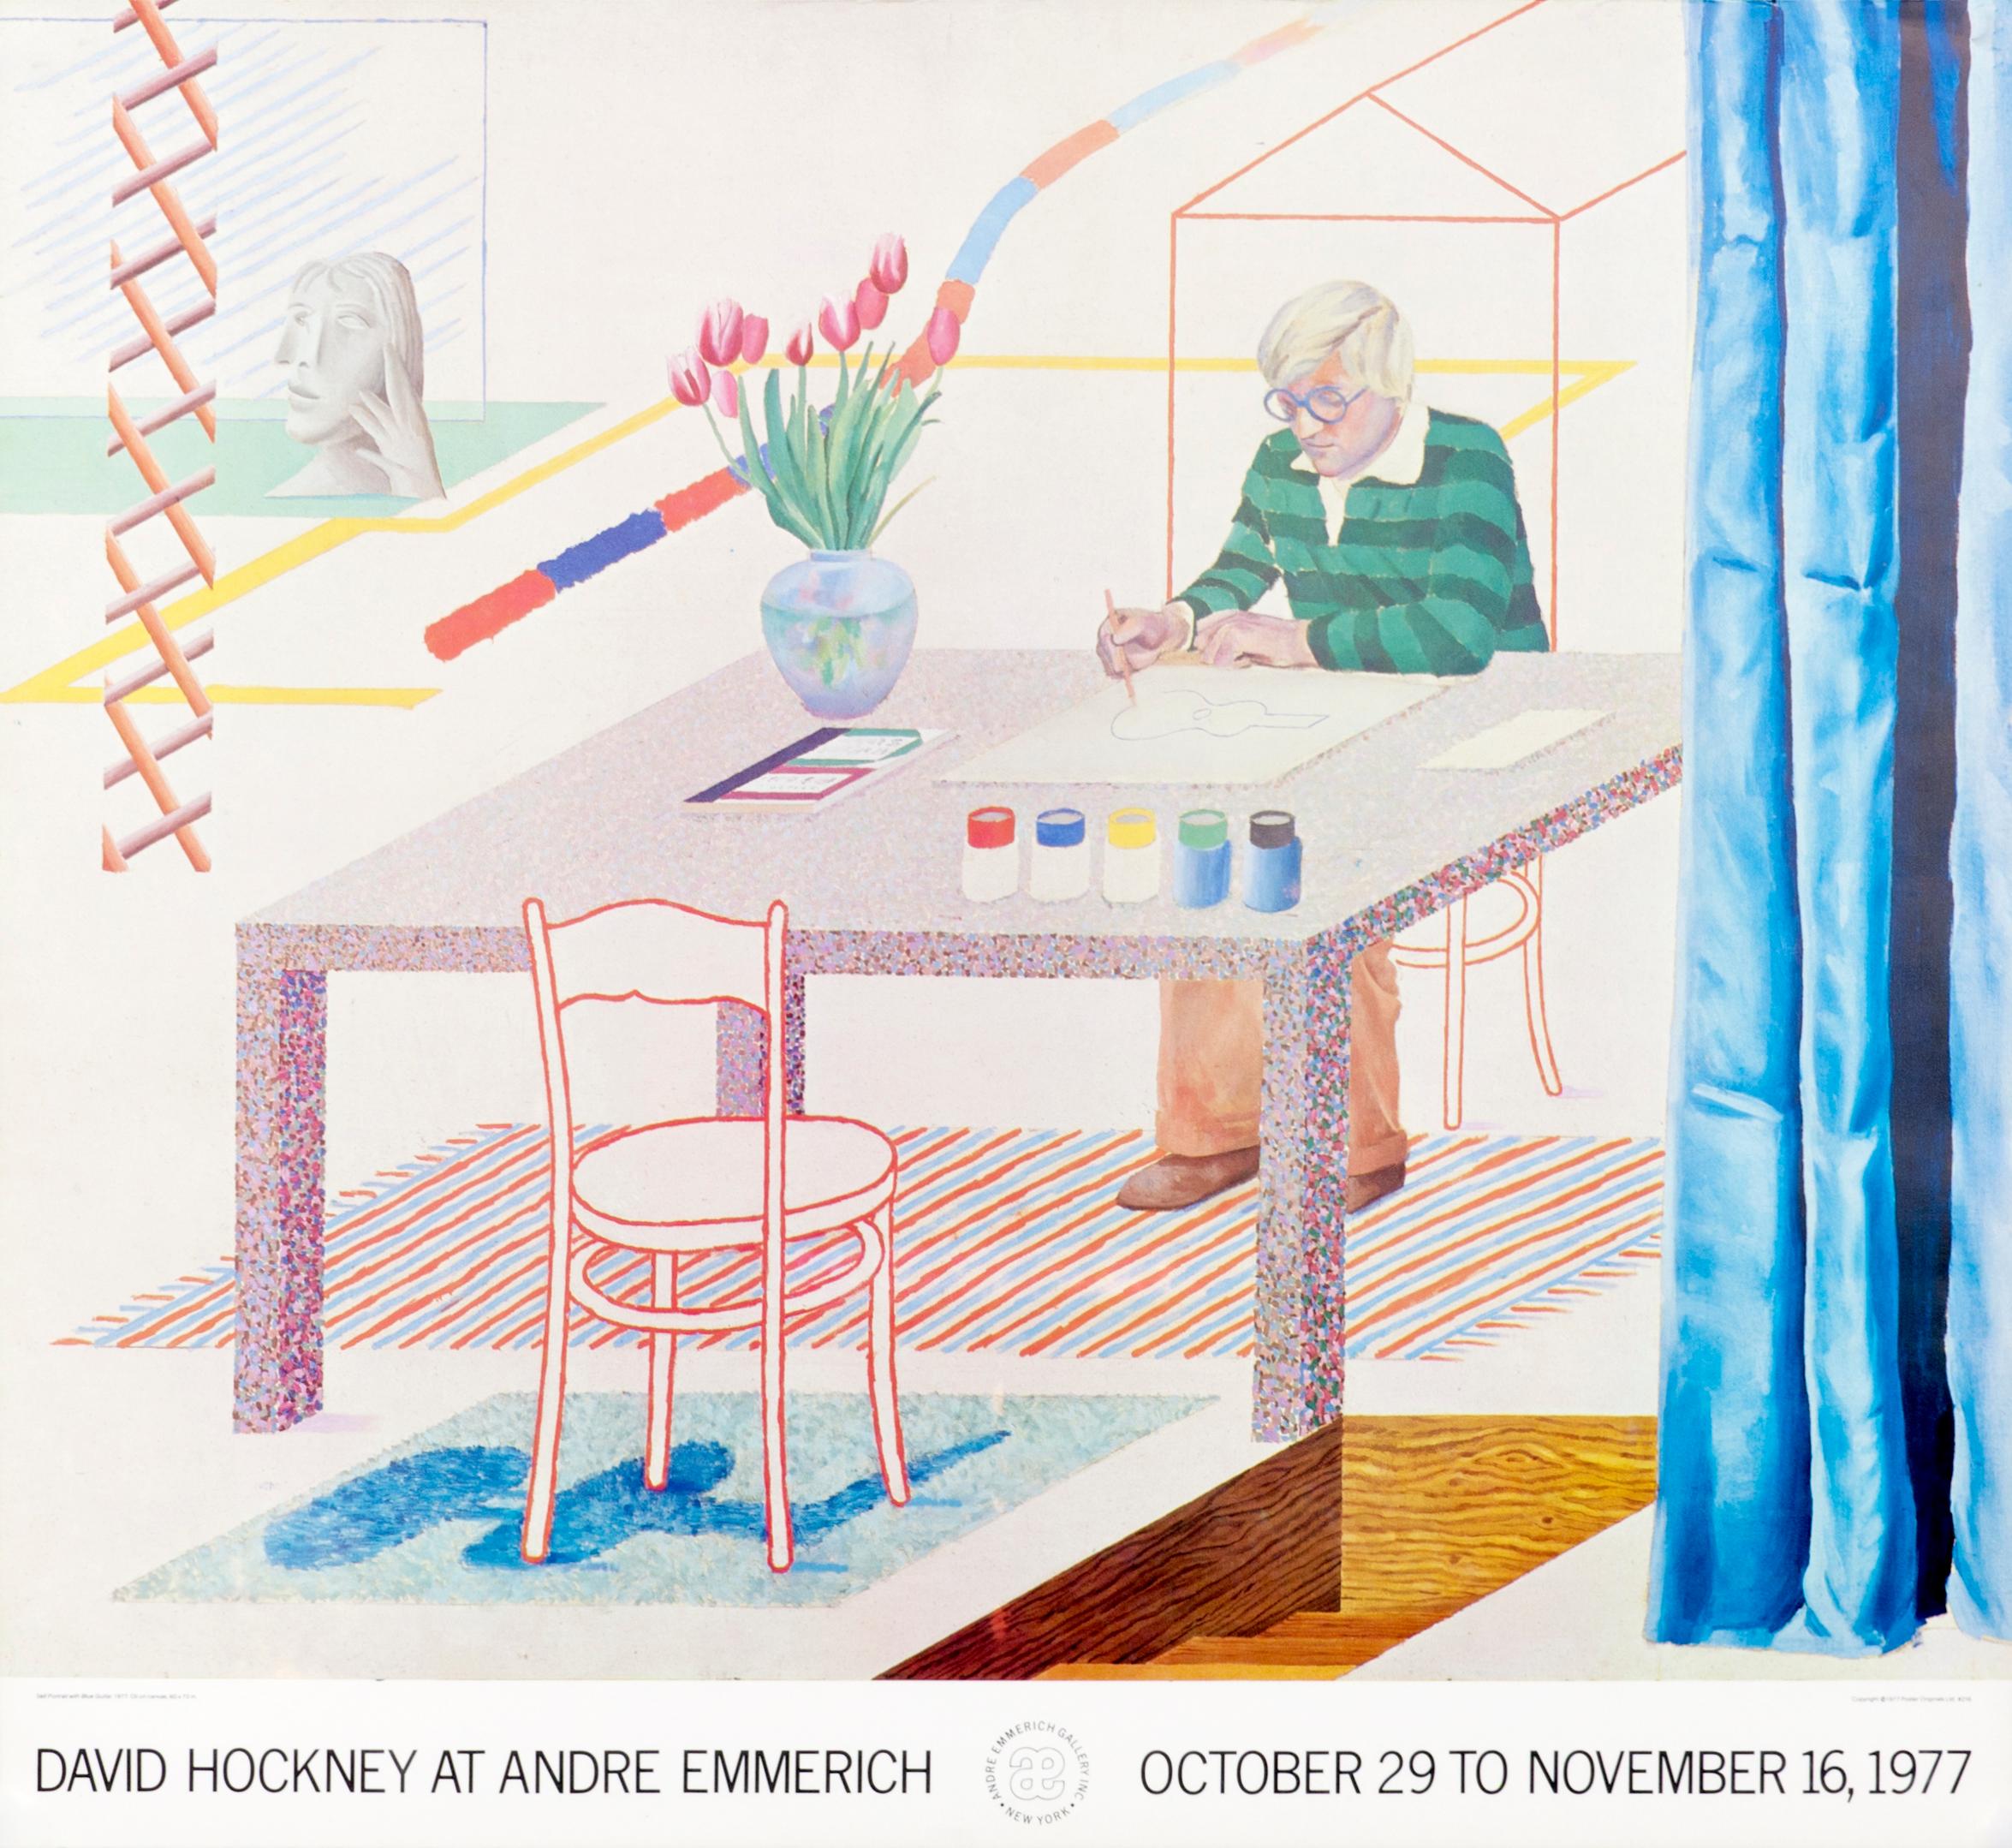 (after) David Hockney Interior Print - "David Hockey at Andre Emmerich" Original Vintage Exhibition Poster